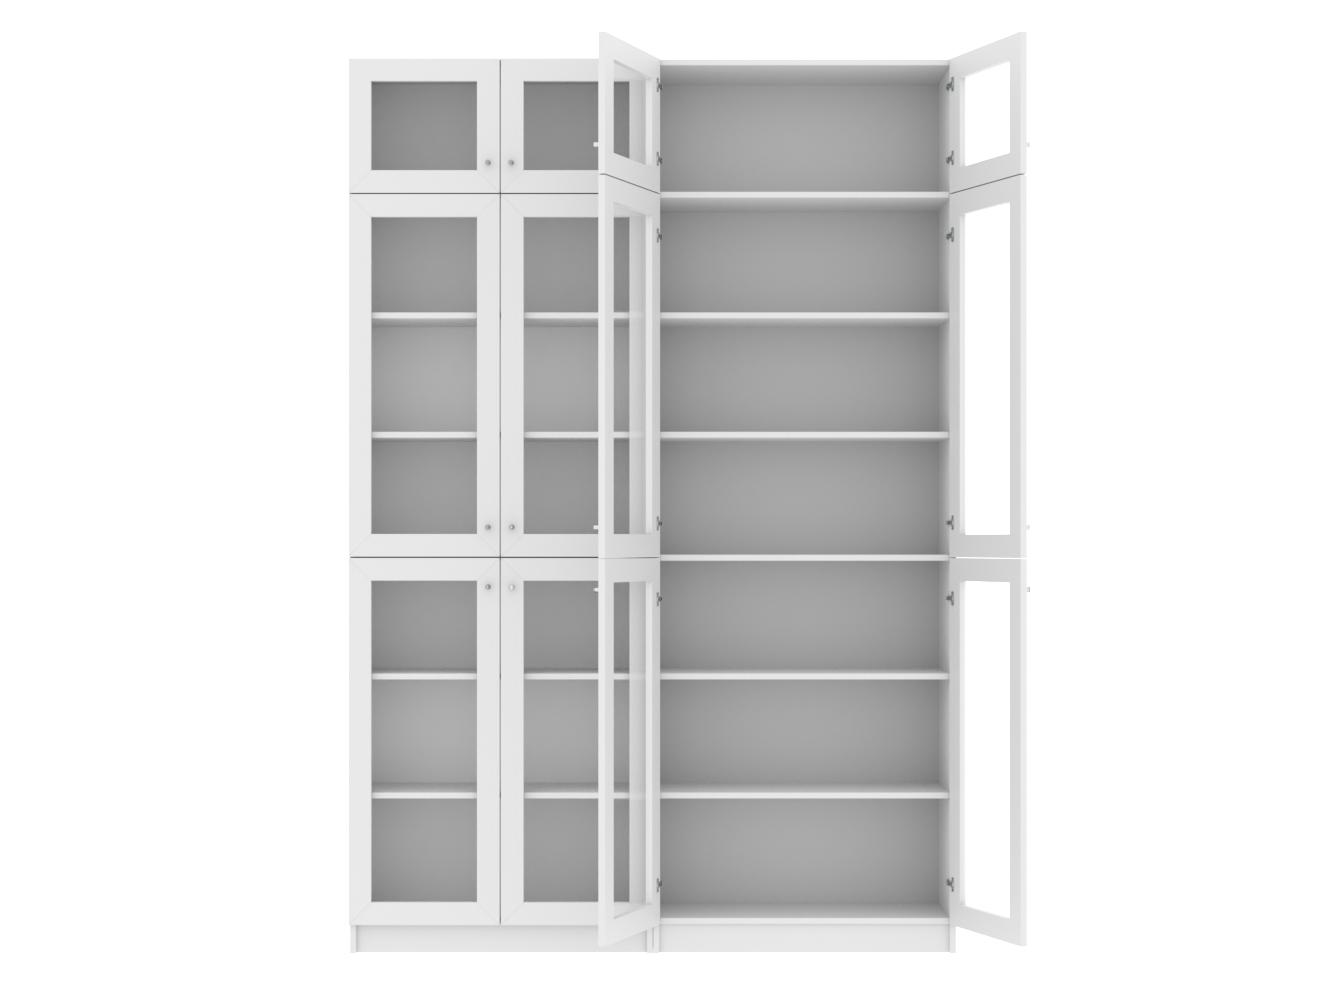 Изображение товара Книжный шкаф Билли 37 white ИКЕА (IKEA), 160x30x237 см на сайте adeta.ru